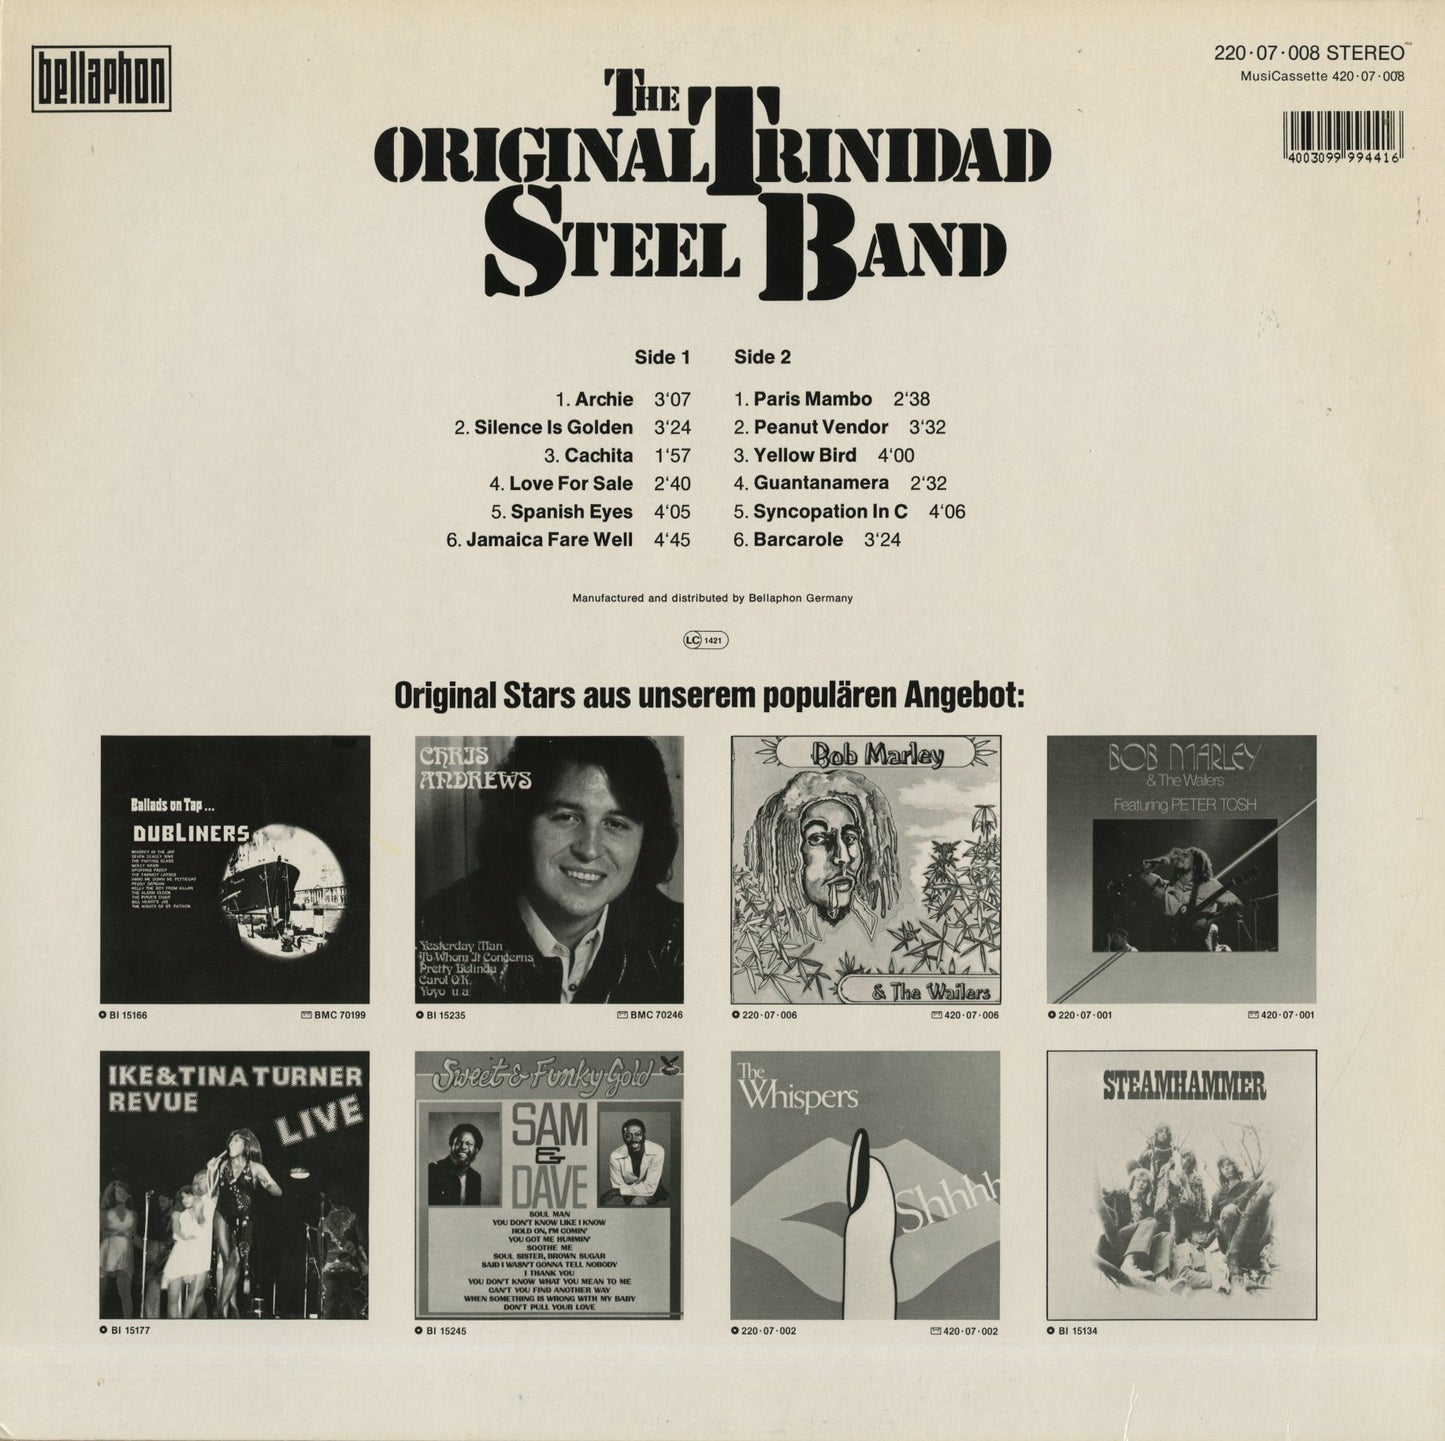 The Original Trinidad Steel Band / The Original Trinidad Steel Band (2430 059)